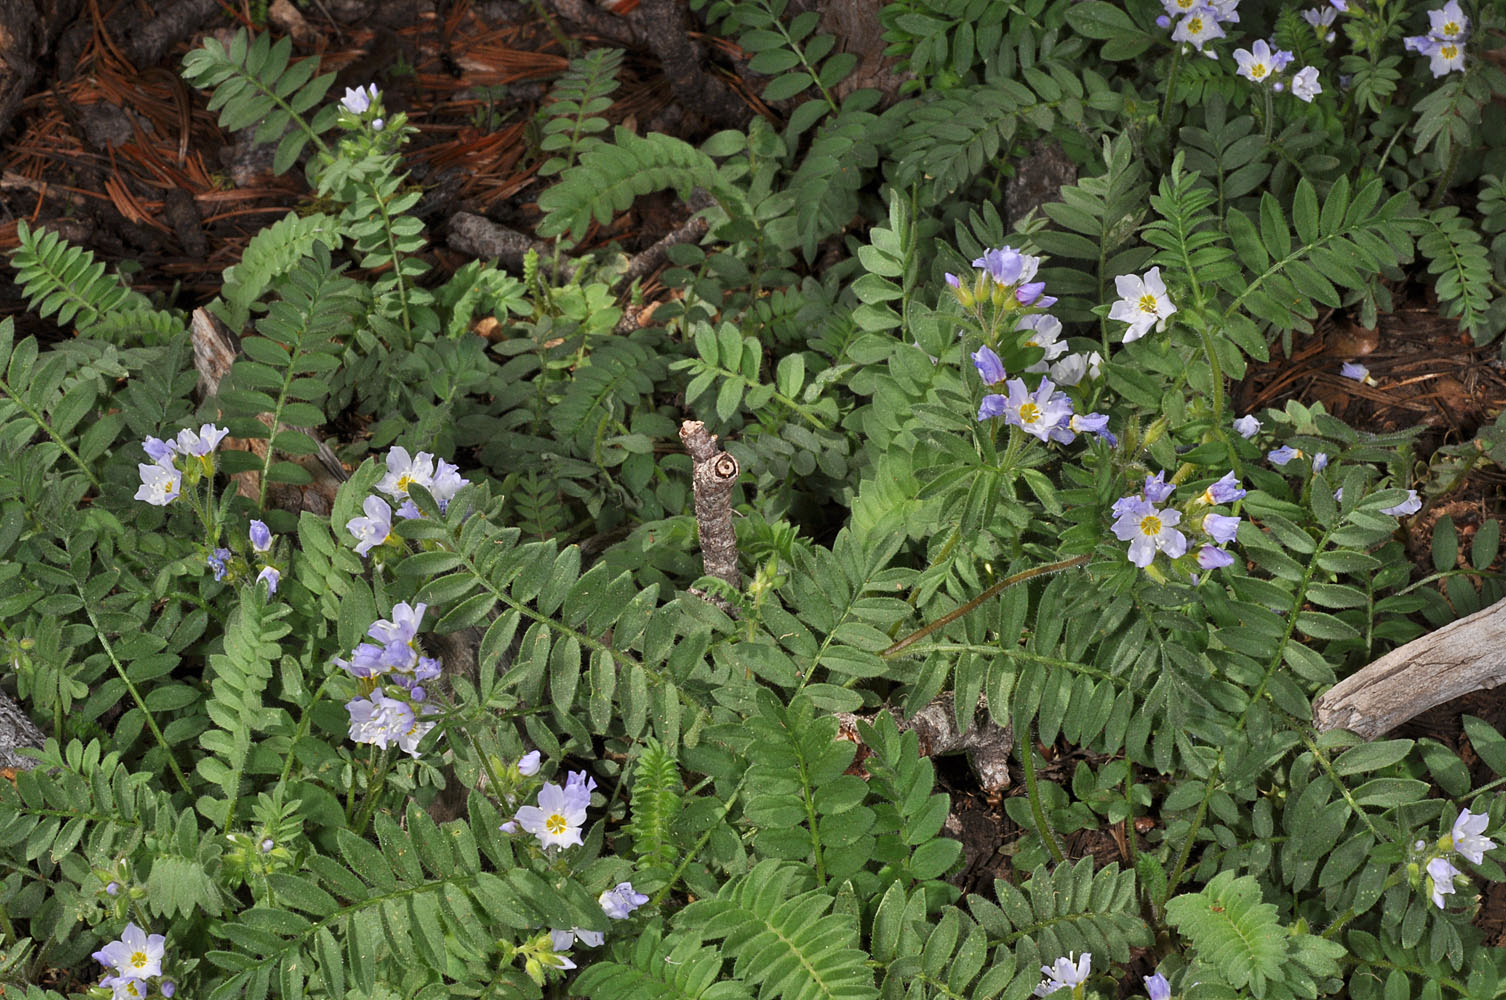 Flora of Eastern Washington Image: Polemonium pulcherrimum